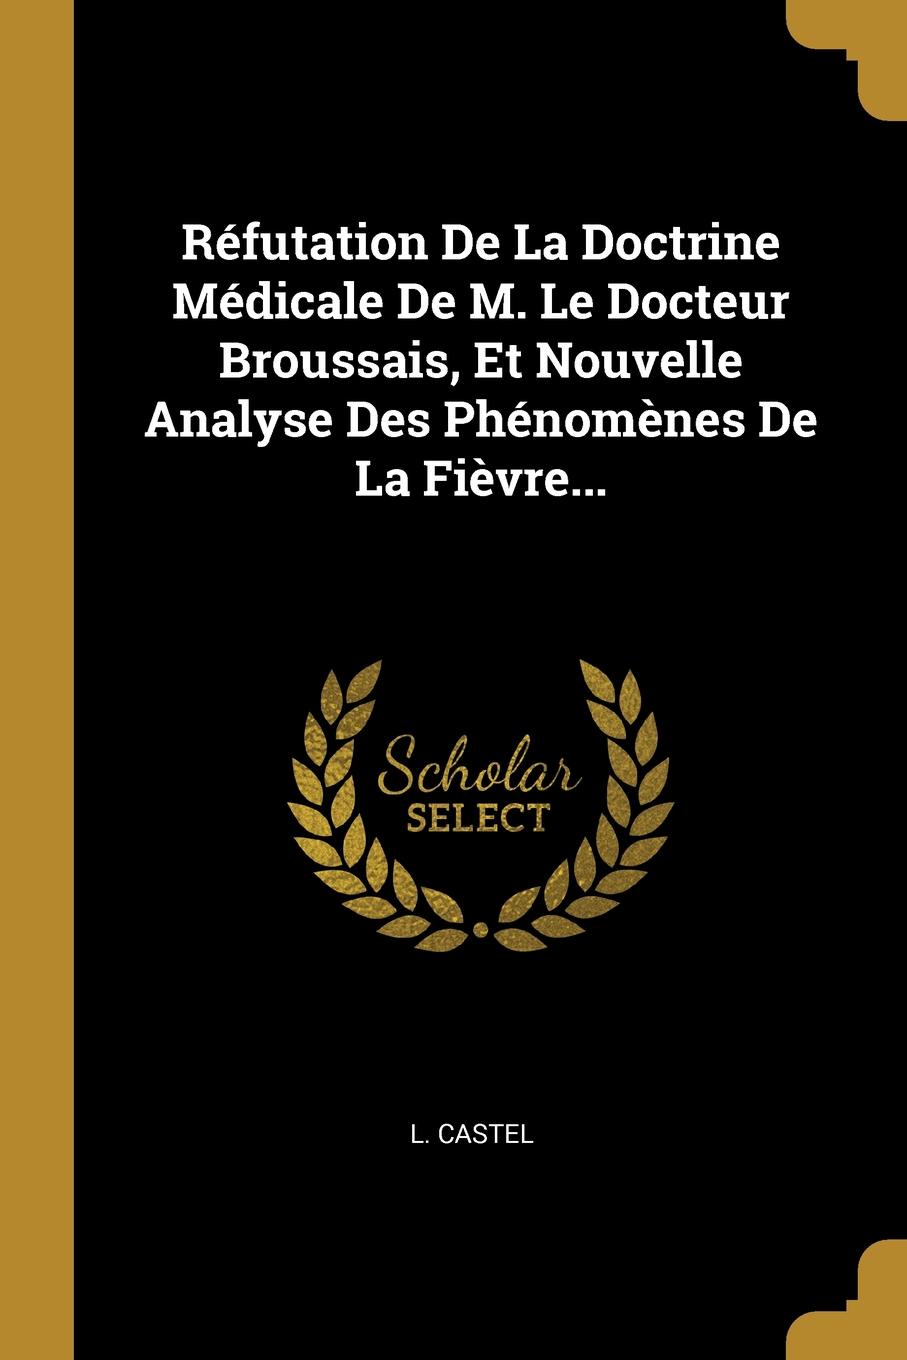 Refutation De La Doctrine Medicale De M. Le Docteur Broussais, Et Nouvelle Analyse Des Phenomenes De La Fievre...